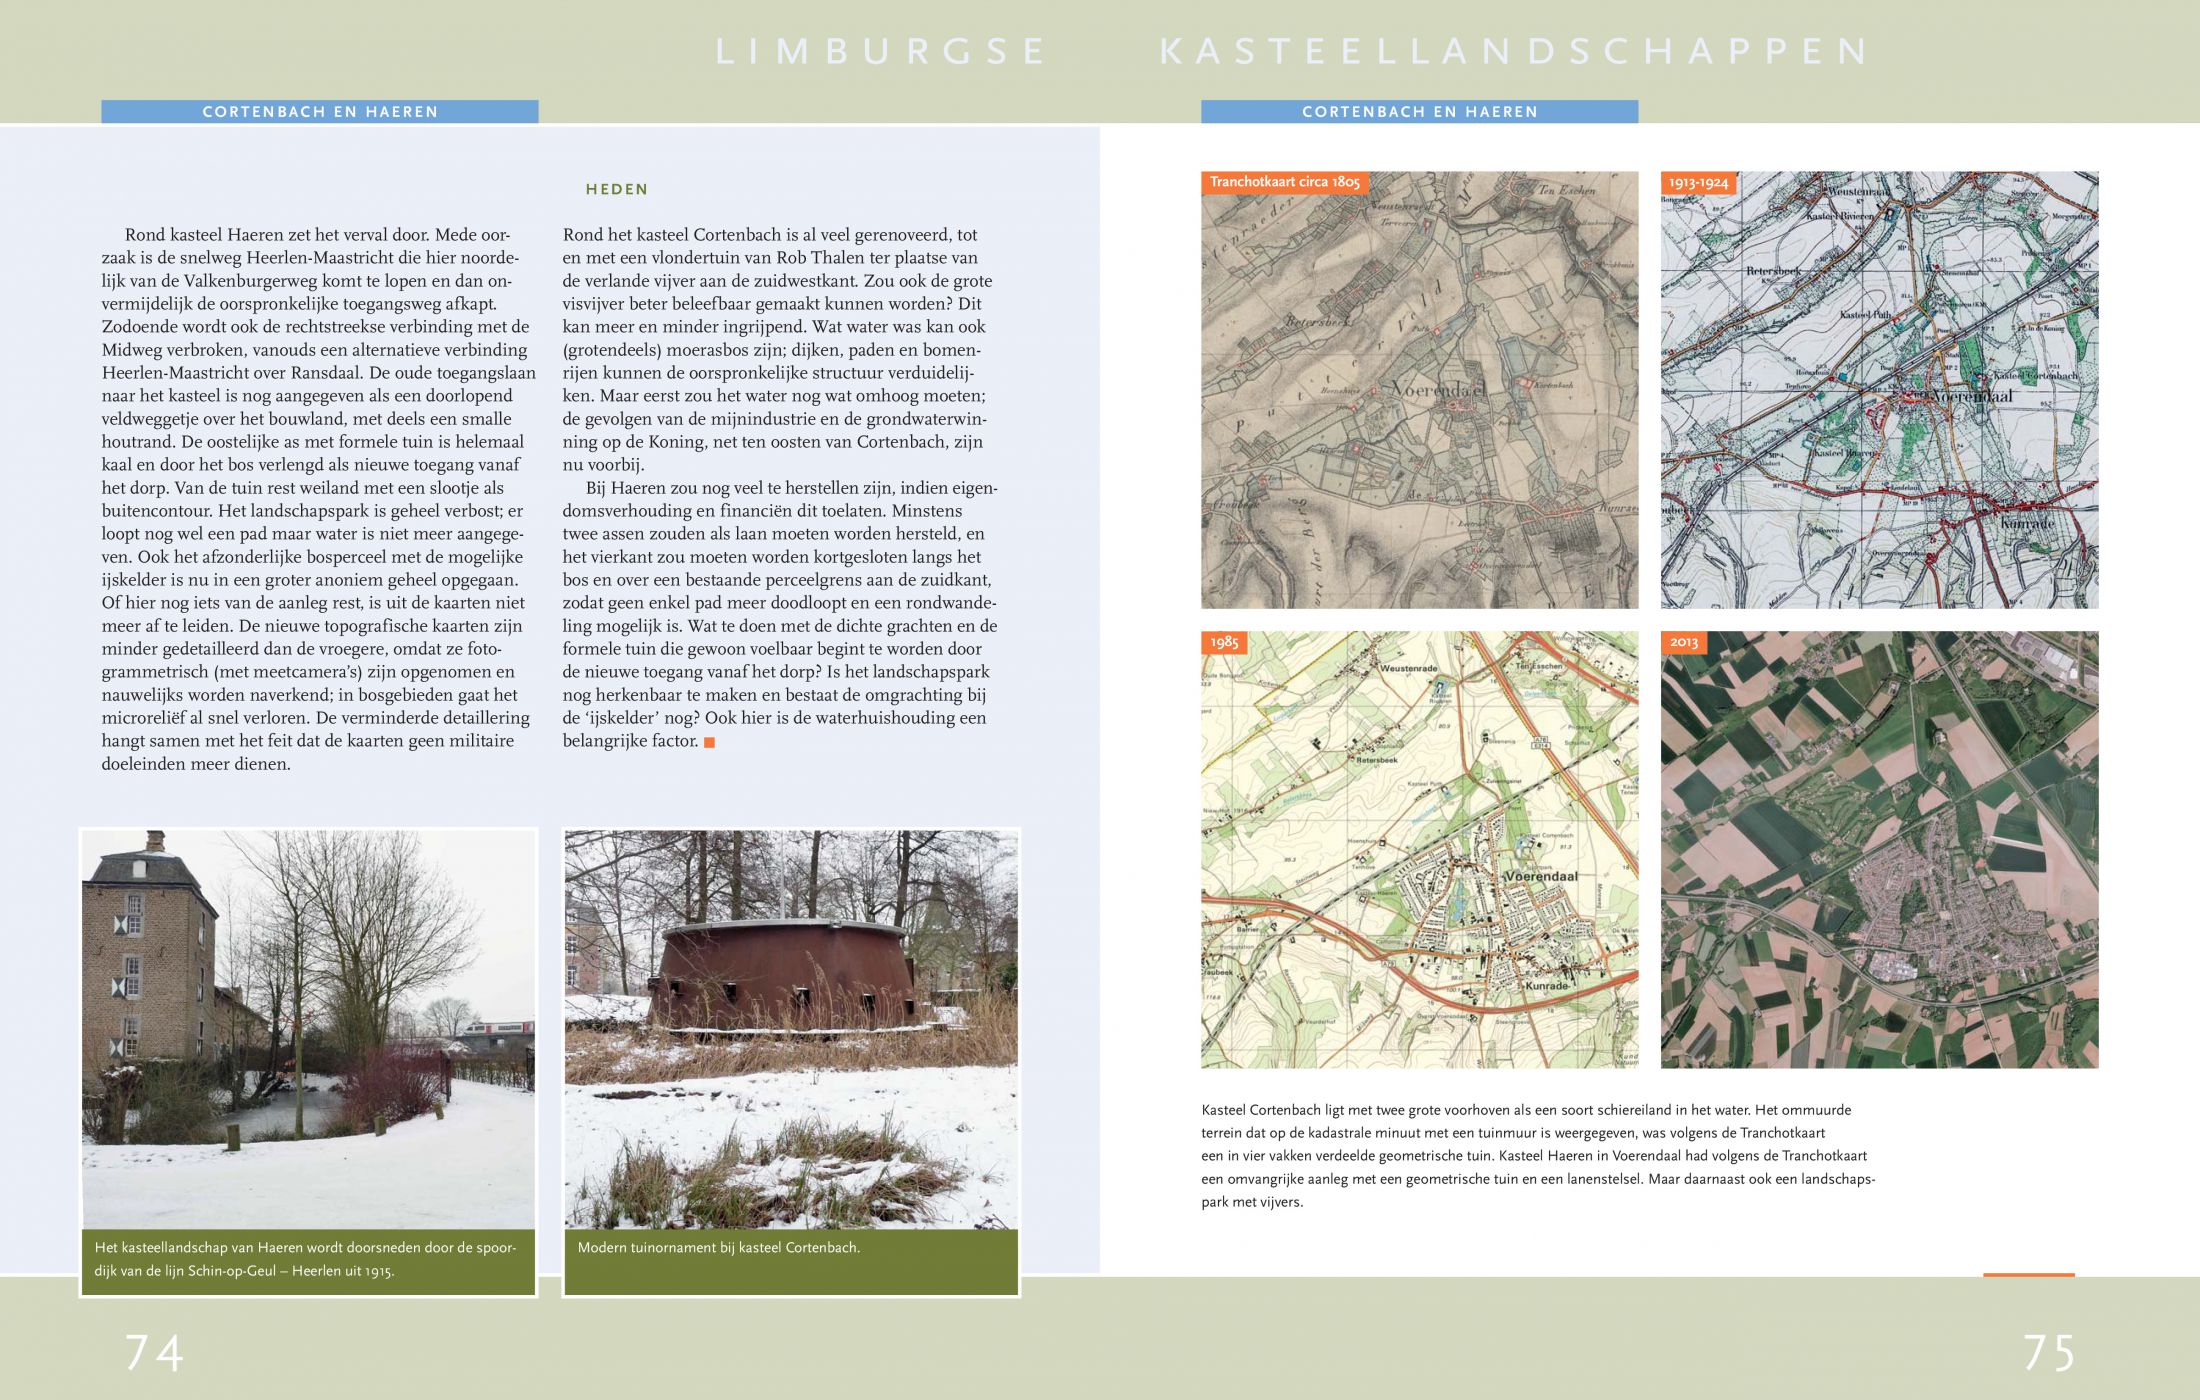 Inkijkexemplaar van het boek: <em>Kasteel en landschap in Limburg</em> - © Uitgeverij Matrijs